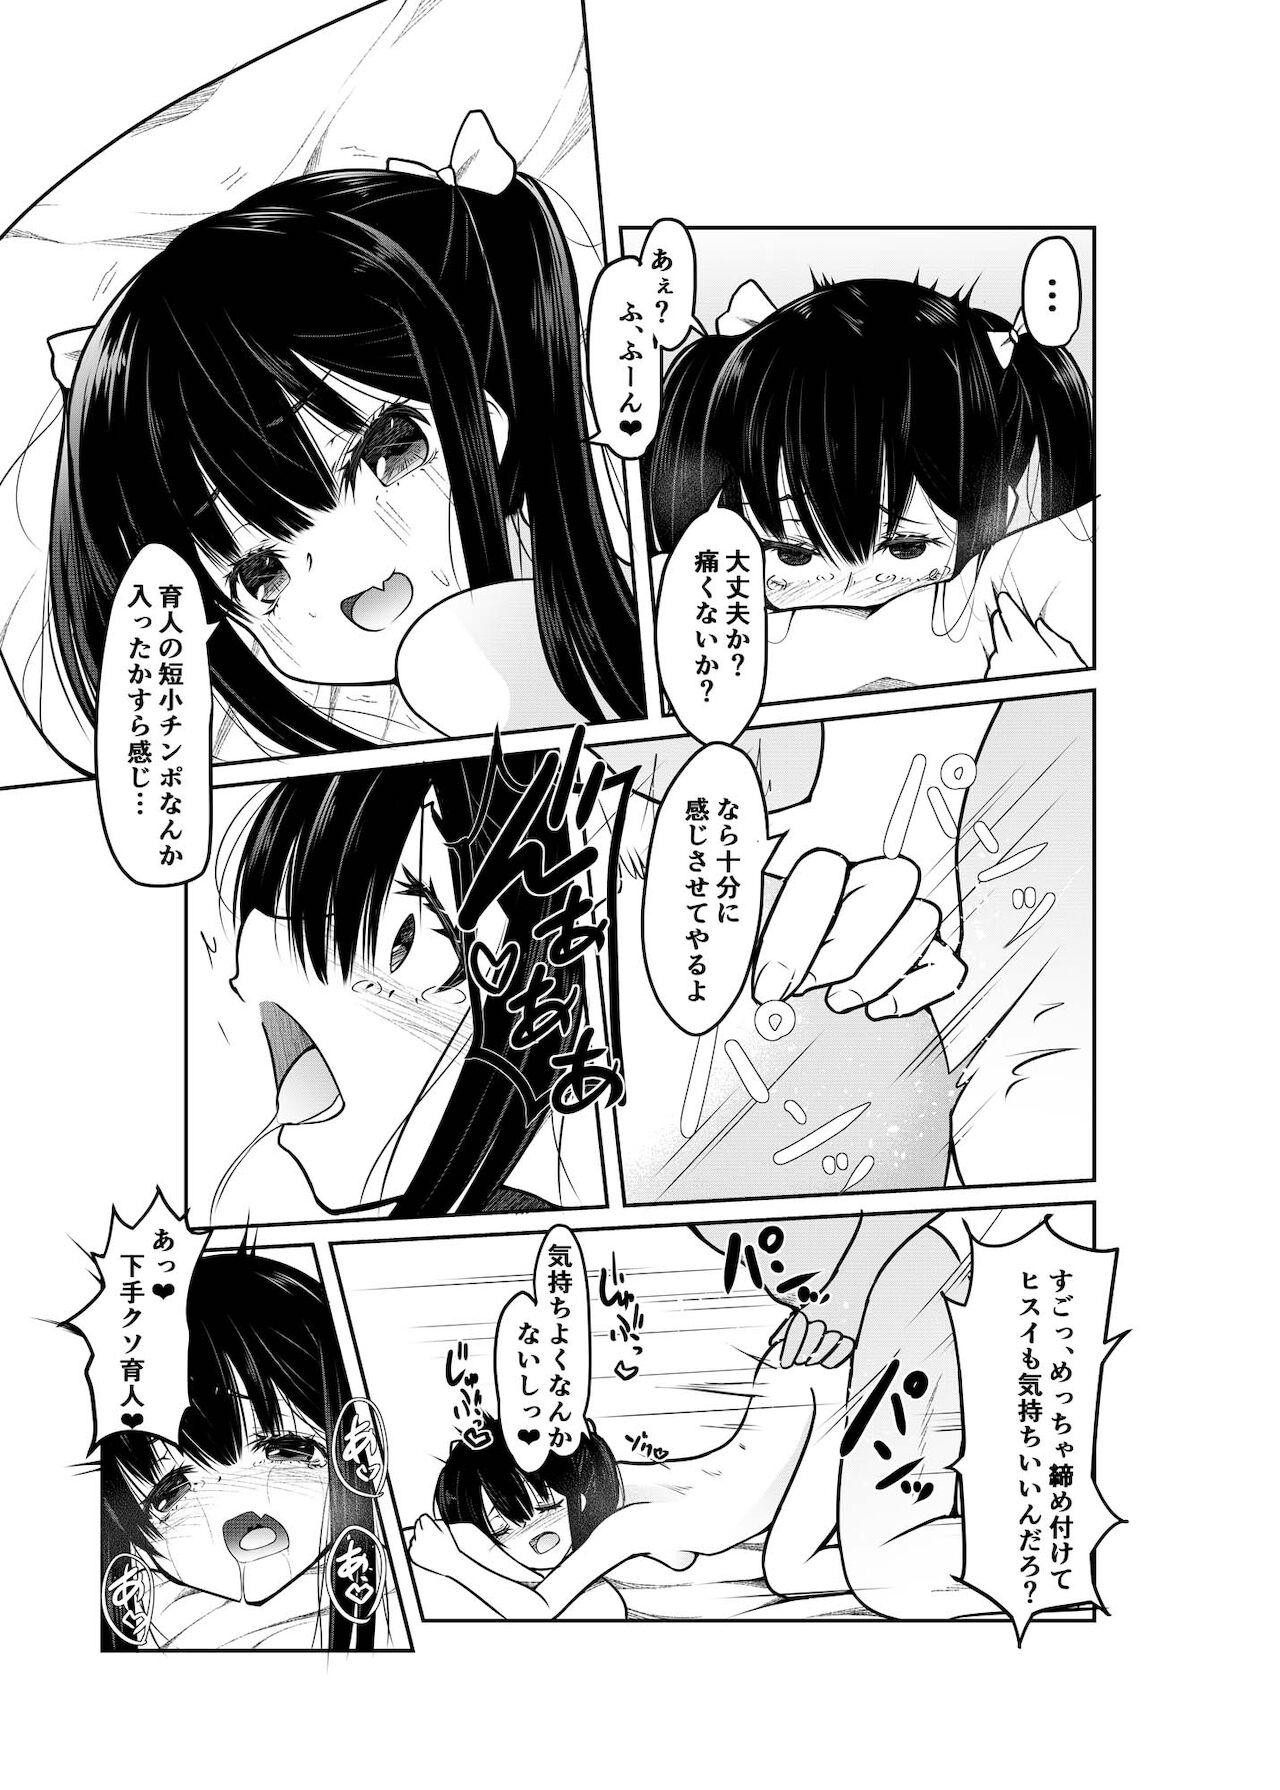 Gayemo "Otona nanoni Doutei w Dassaa w" toks Aotte kita TS Mesugaki o Wakaraseru! Cutie - Page 12